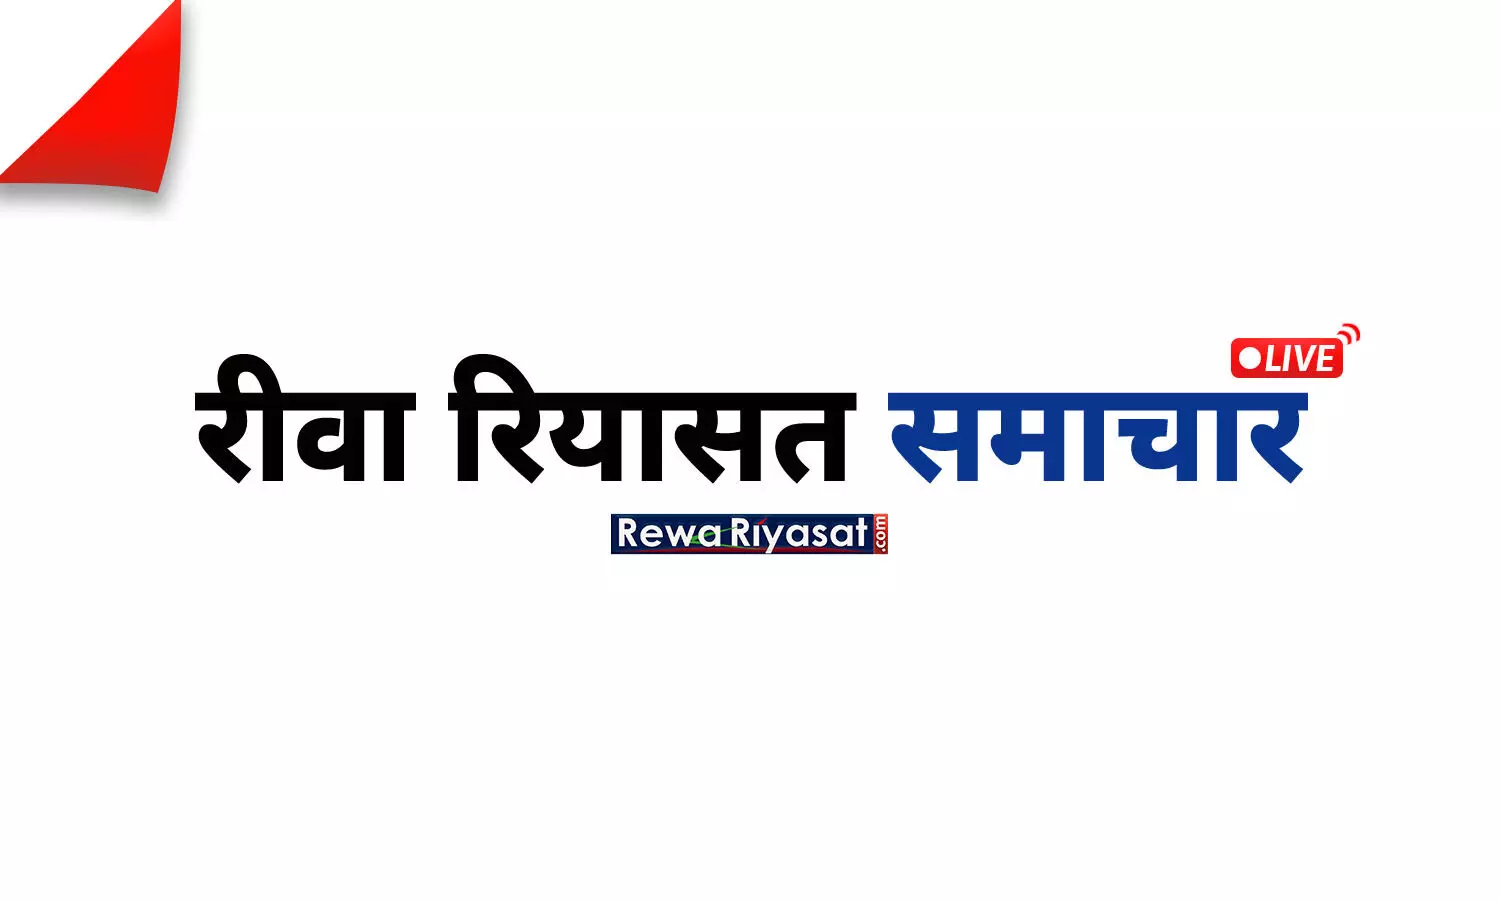 Breaking News in Hindi: लाइव ब्रेकिंग न्यूज़, पढ़ें मंगलवार 22 मार्च के मुख्य और ताजा समाचार